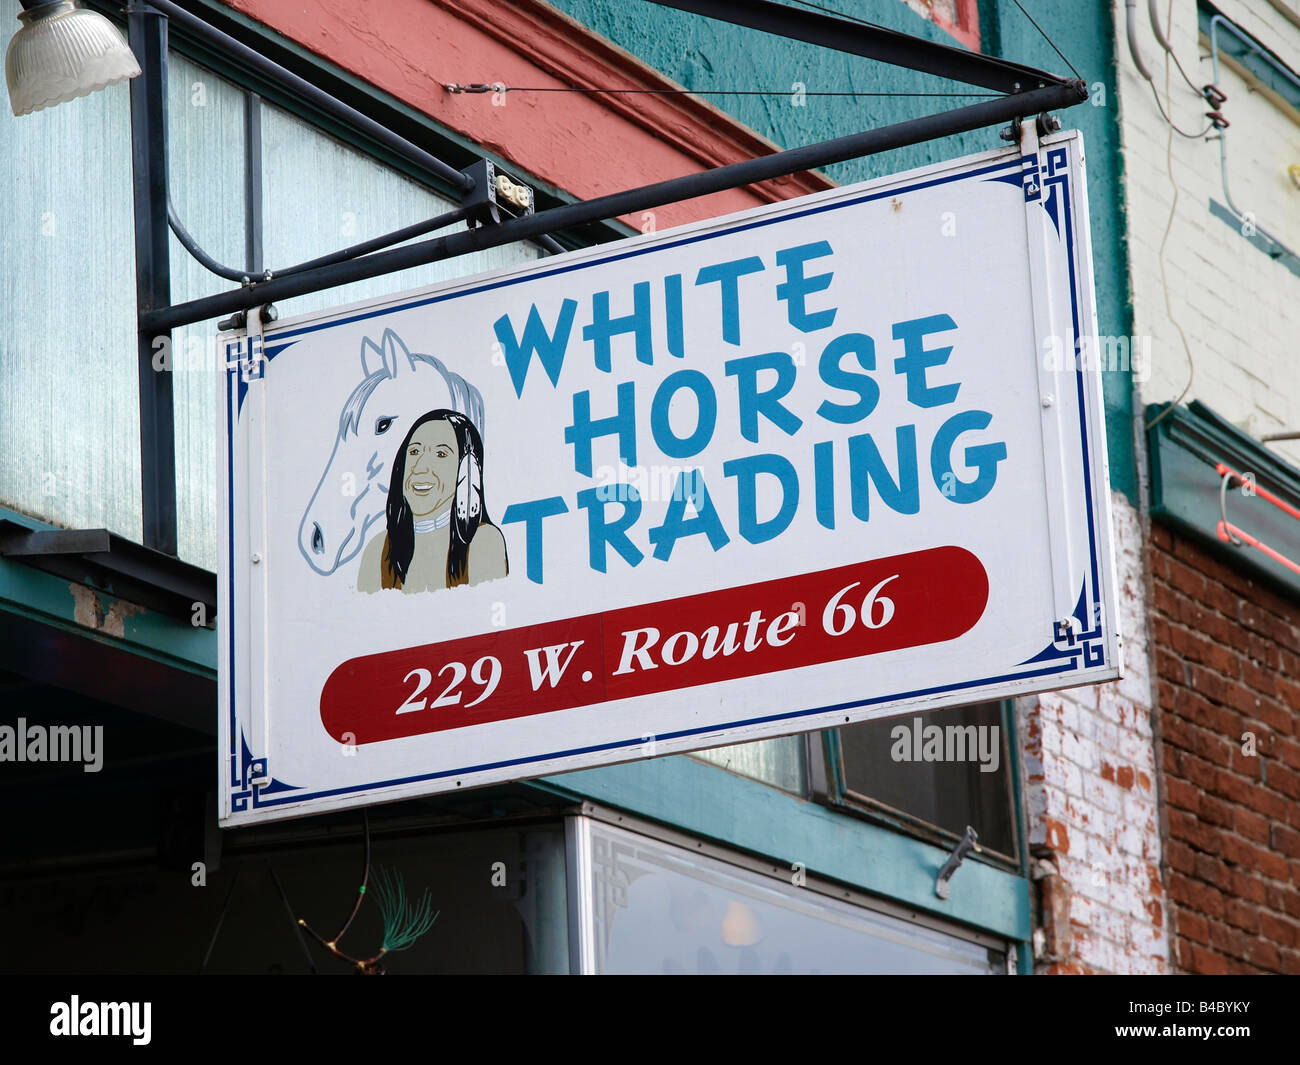 White Horse Trading, Williams, Arizona USA Stock Photo